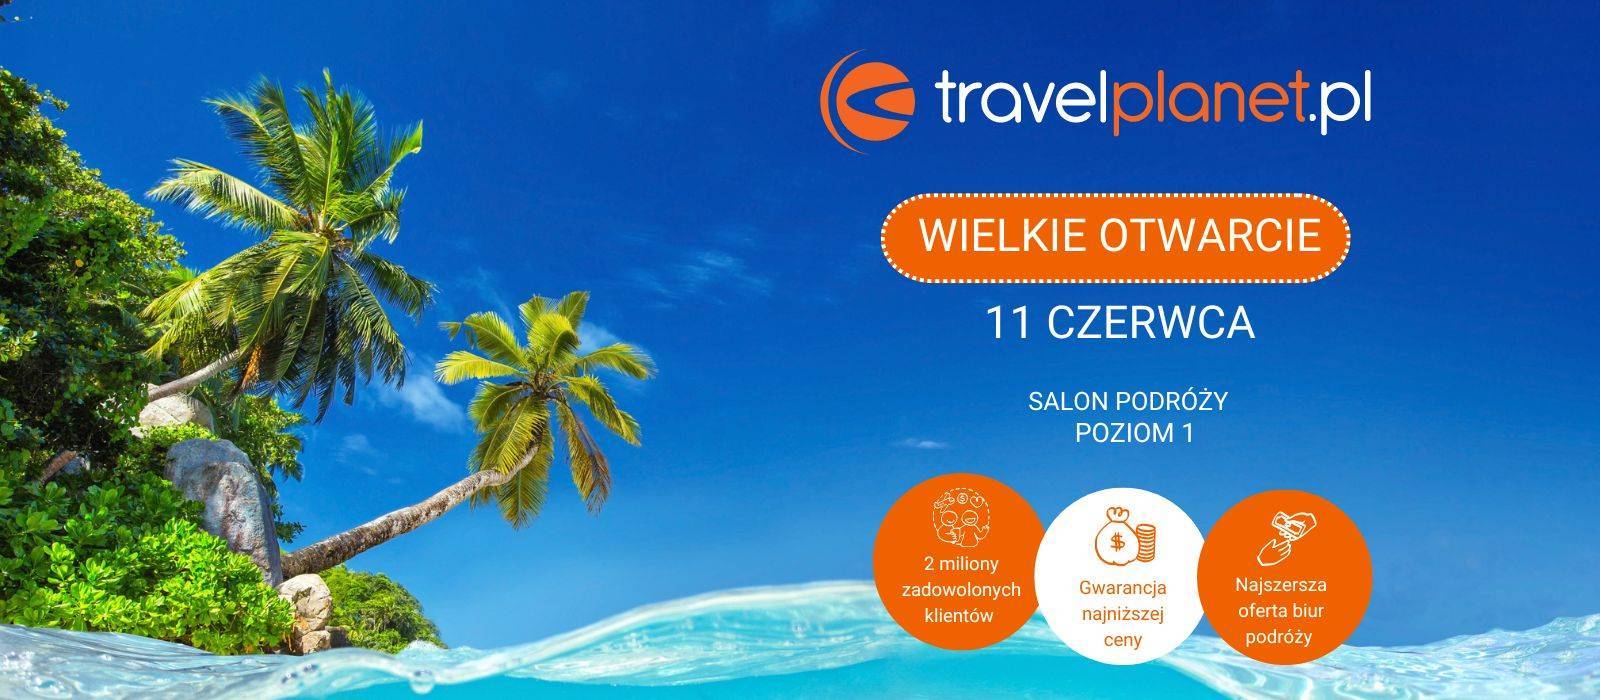 Wkrótce otwarcie Travelplanet.pl - 1